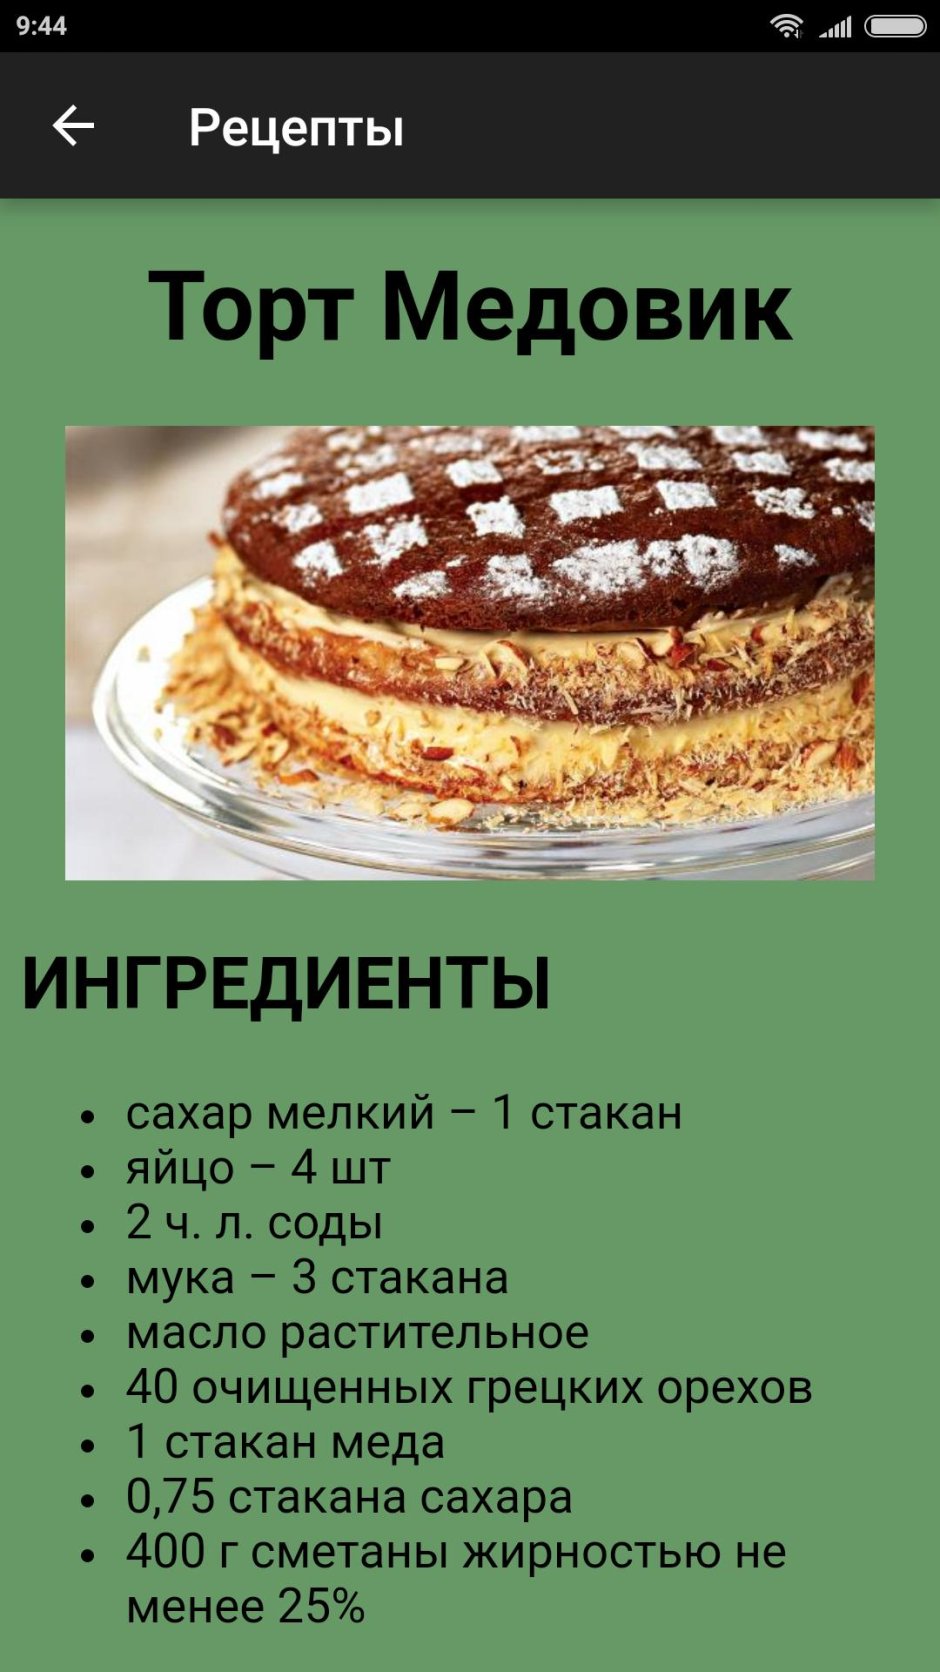 Рецепт стандартного торта